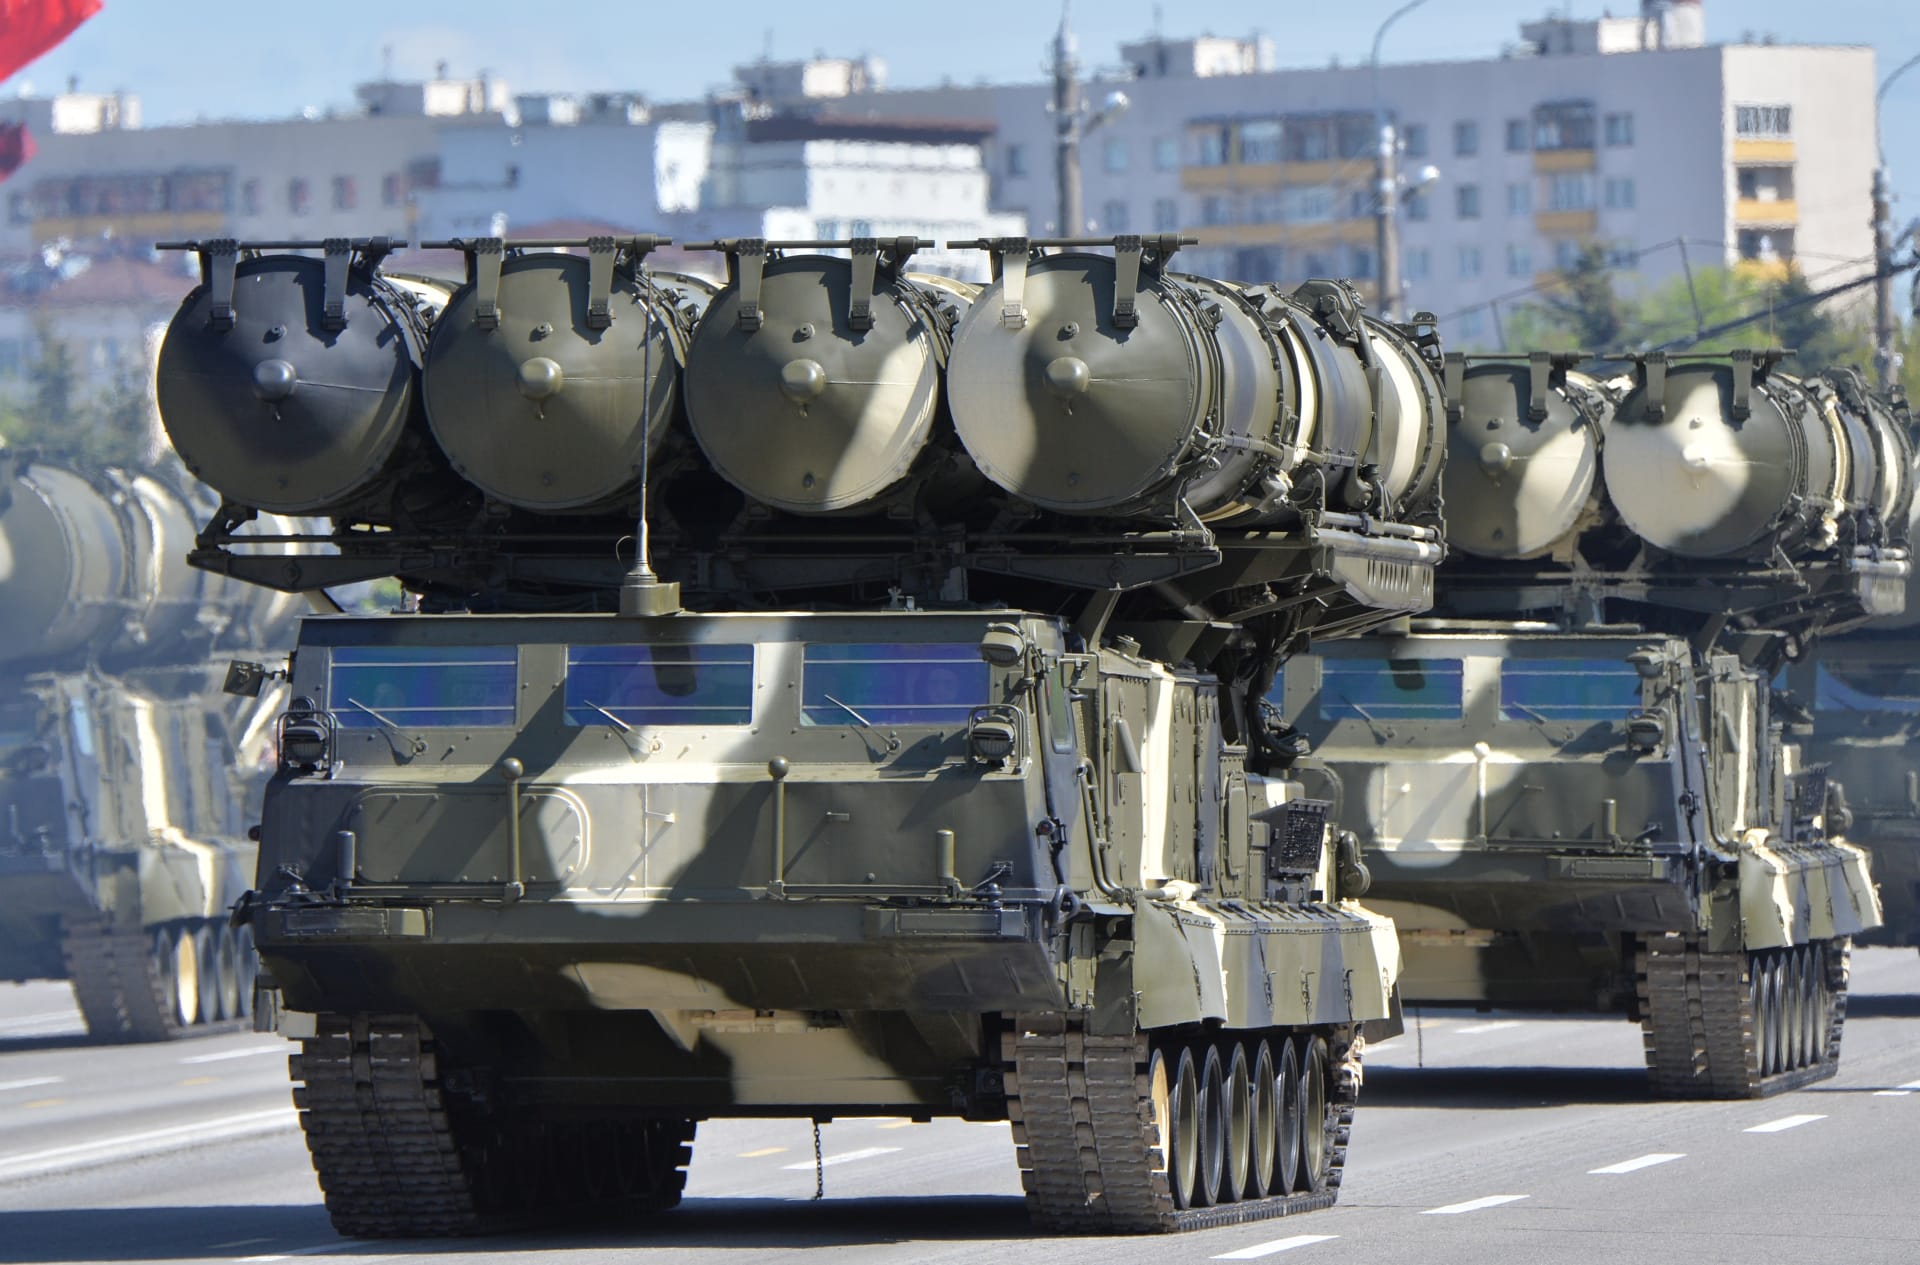 تسليح روسيا لإيران يستمر: وصول شحنة منظومات "S-300" الصاروخية وتوقعات لشراء مقاتلات "SU-30"